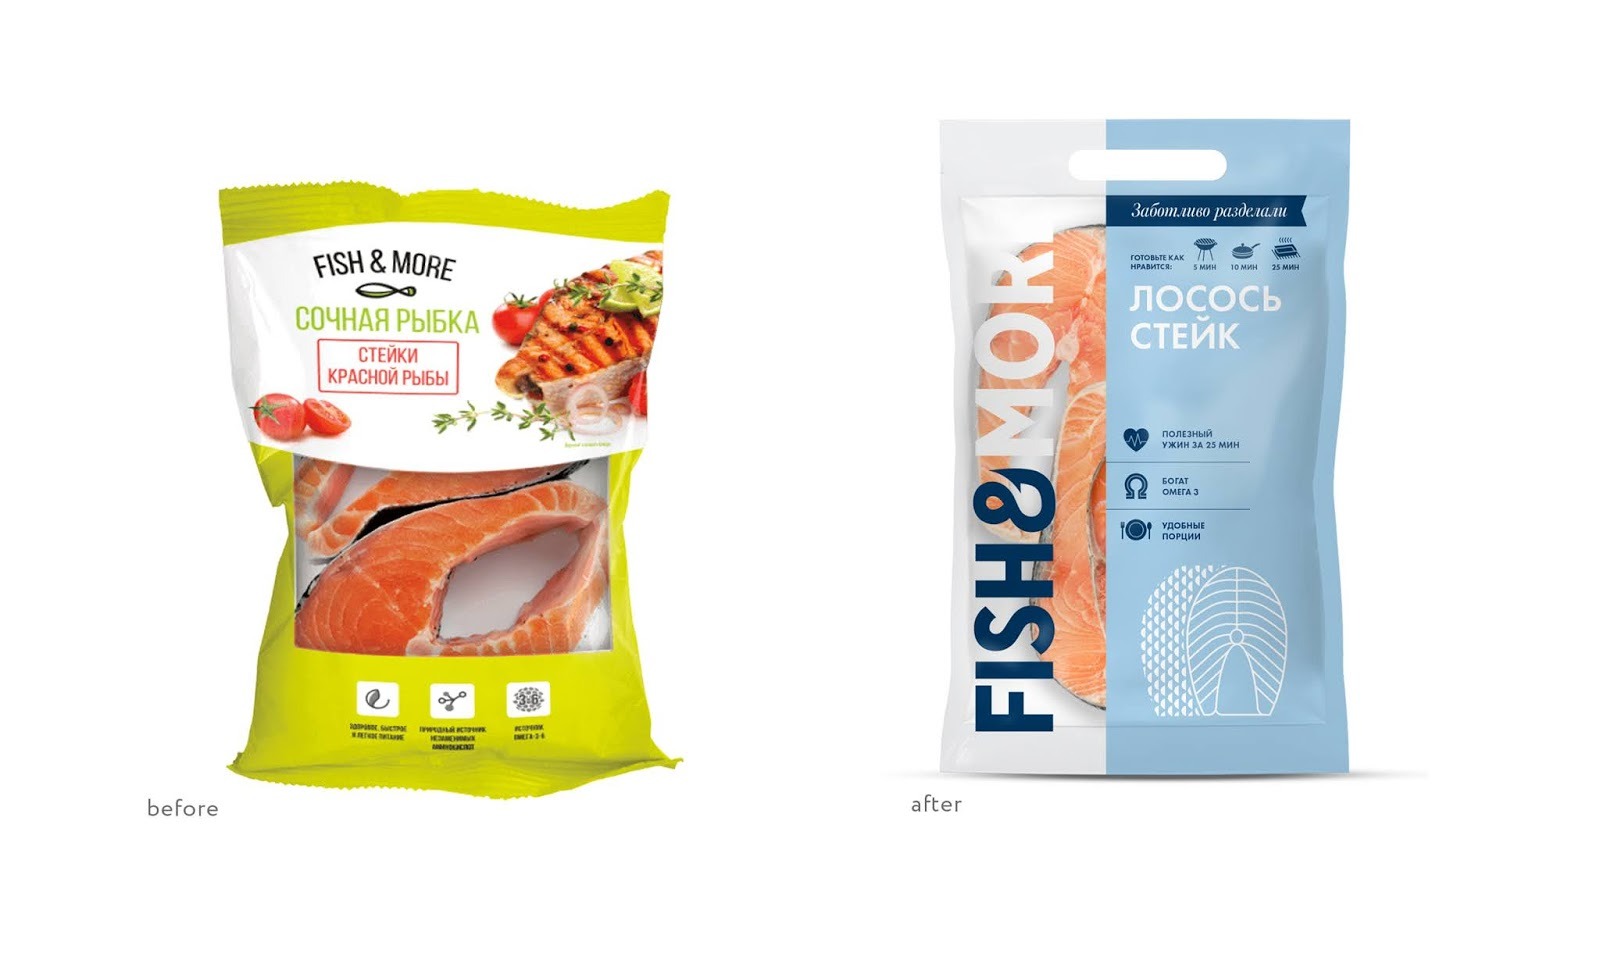 Fish&More冷冻鱼和海鲜产品包装设计